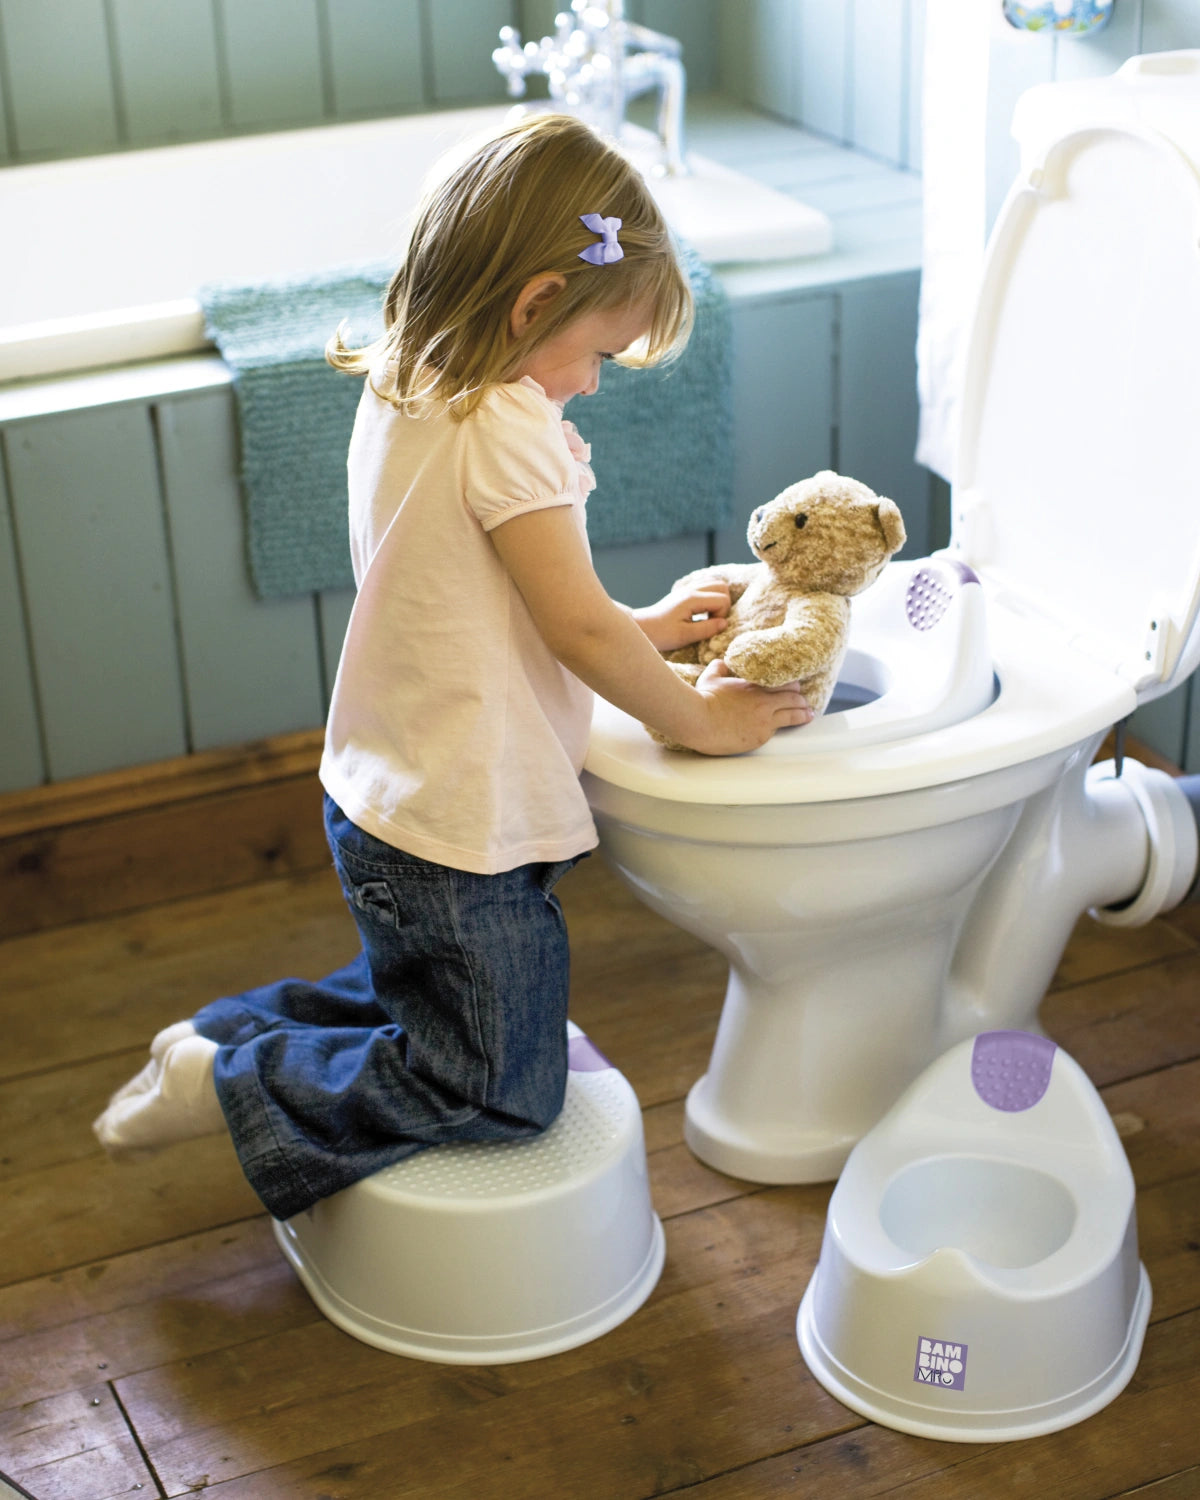 Réducteur de toilettes pour apprentissage de la propreté - Bambino mio